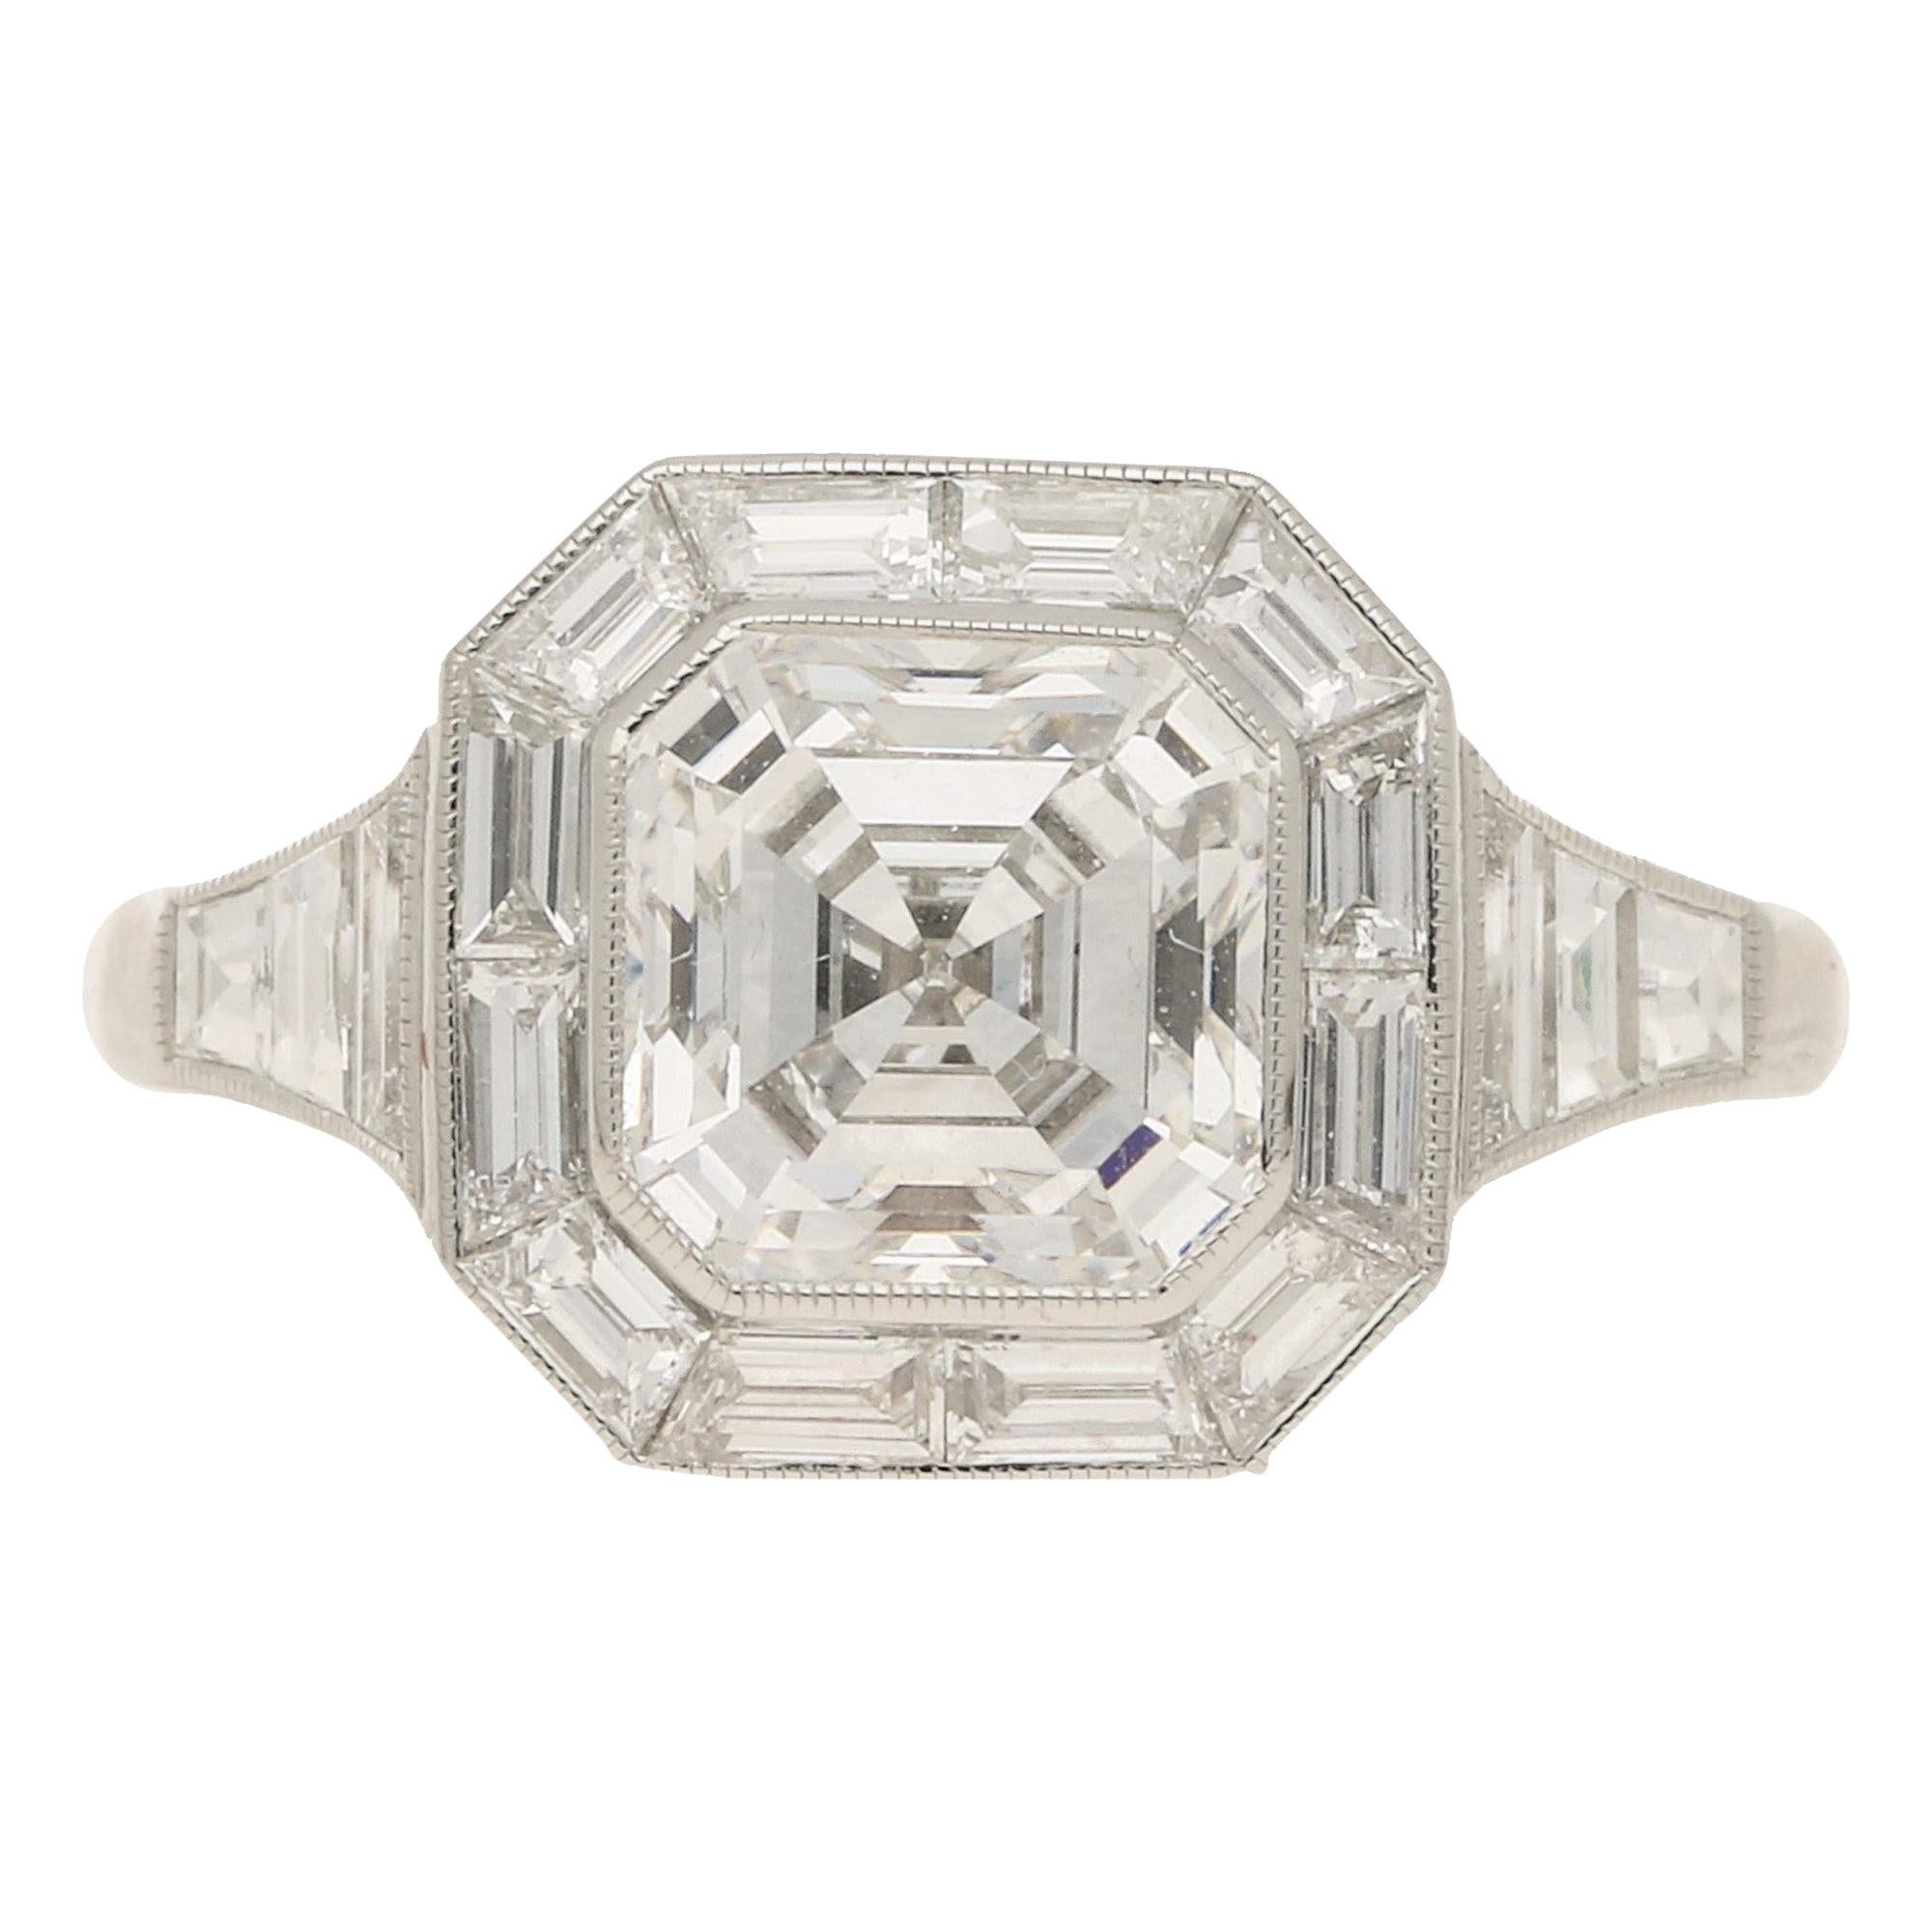 Asscher Cut Diamond Cluster Engagement Ring Set in Platinum